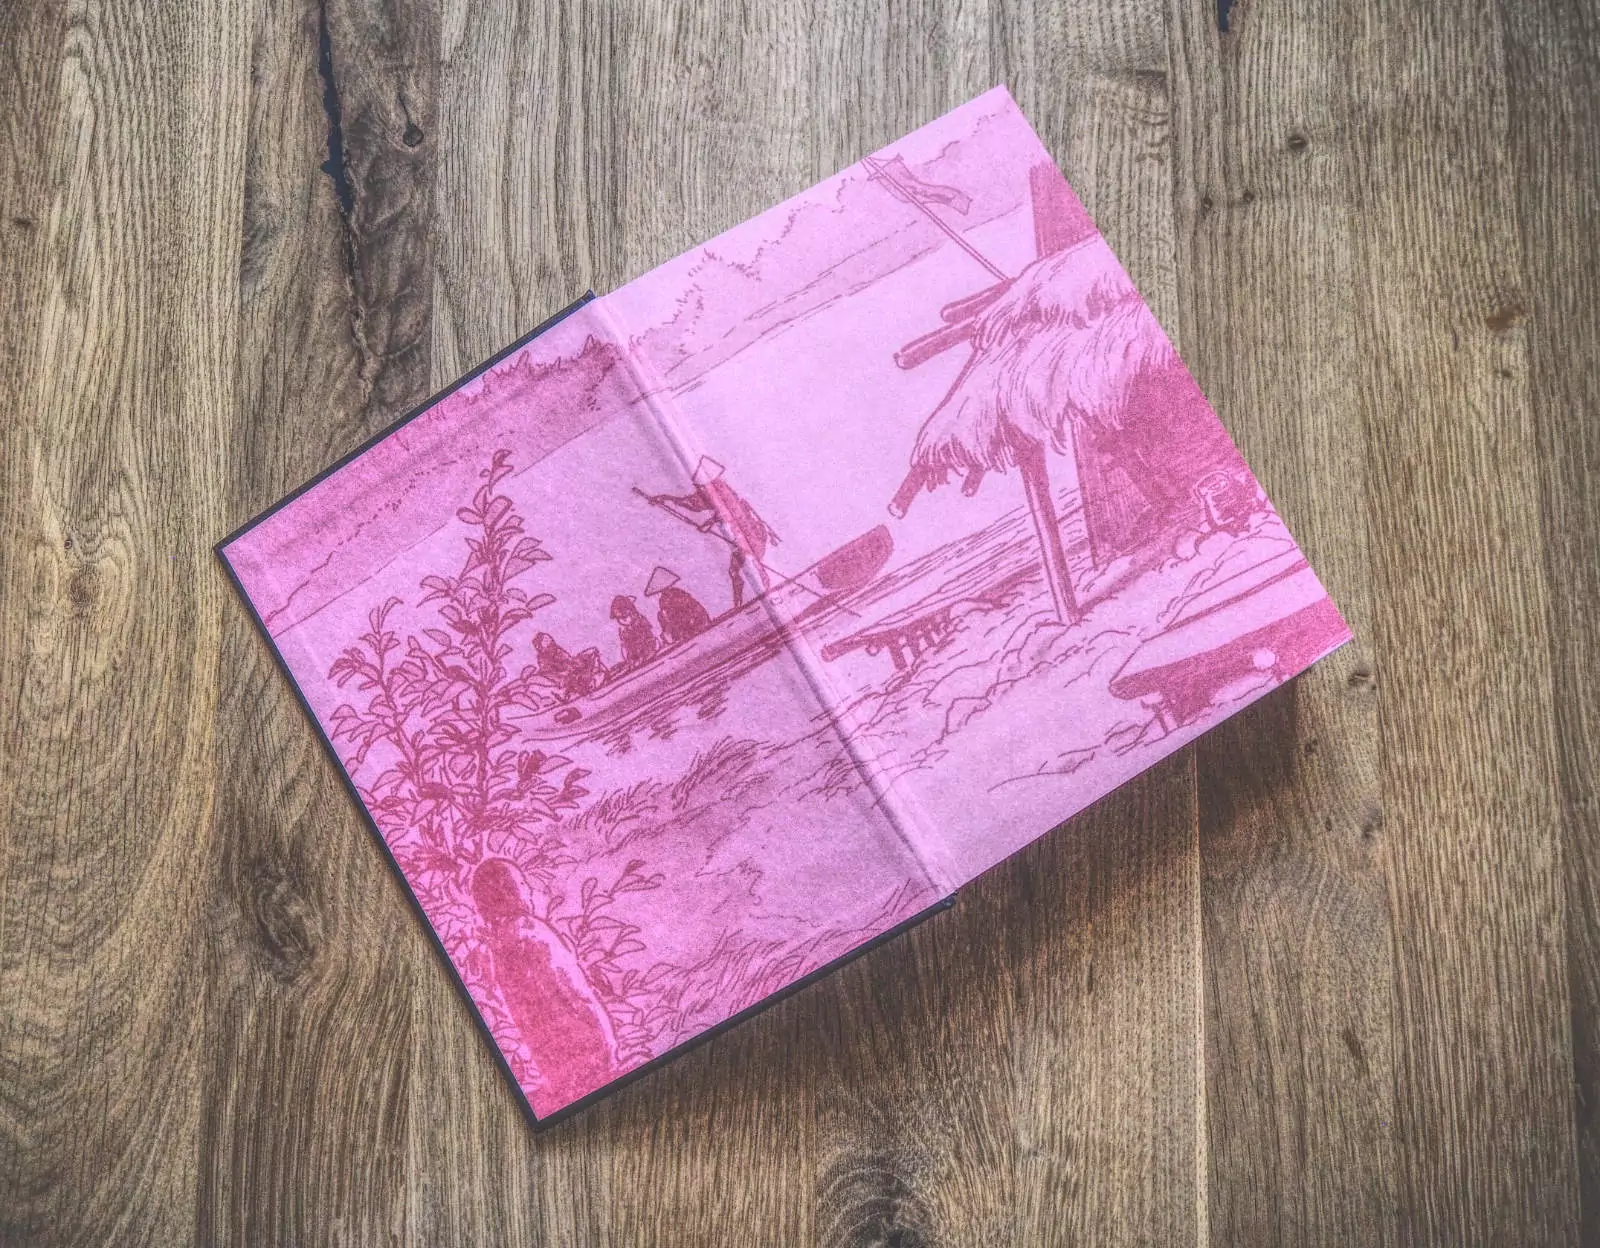 Ein rosafarbenes Buch mit dem Bild eines Bootes darauf.